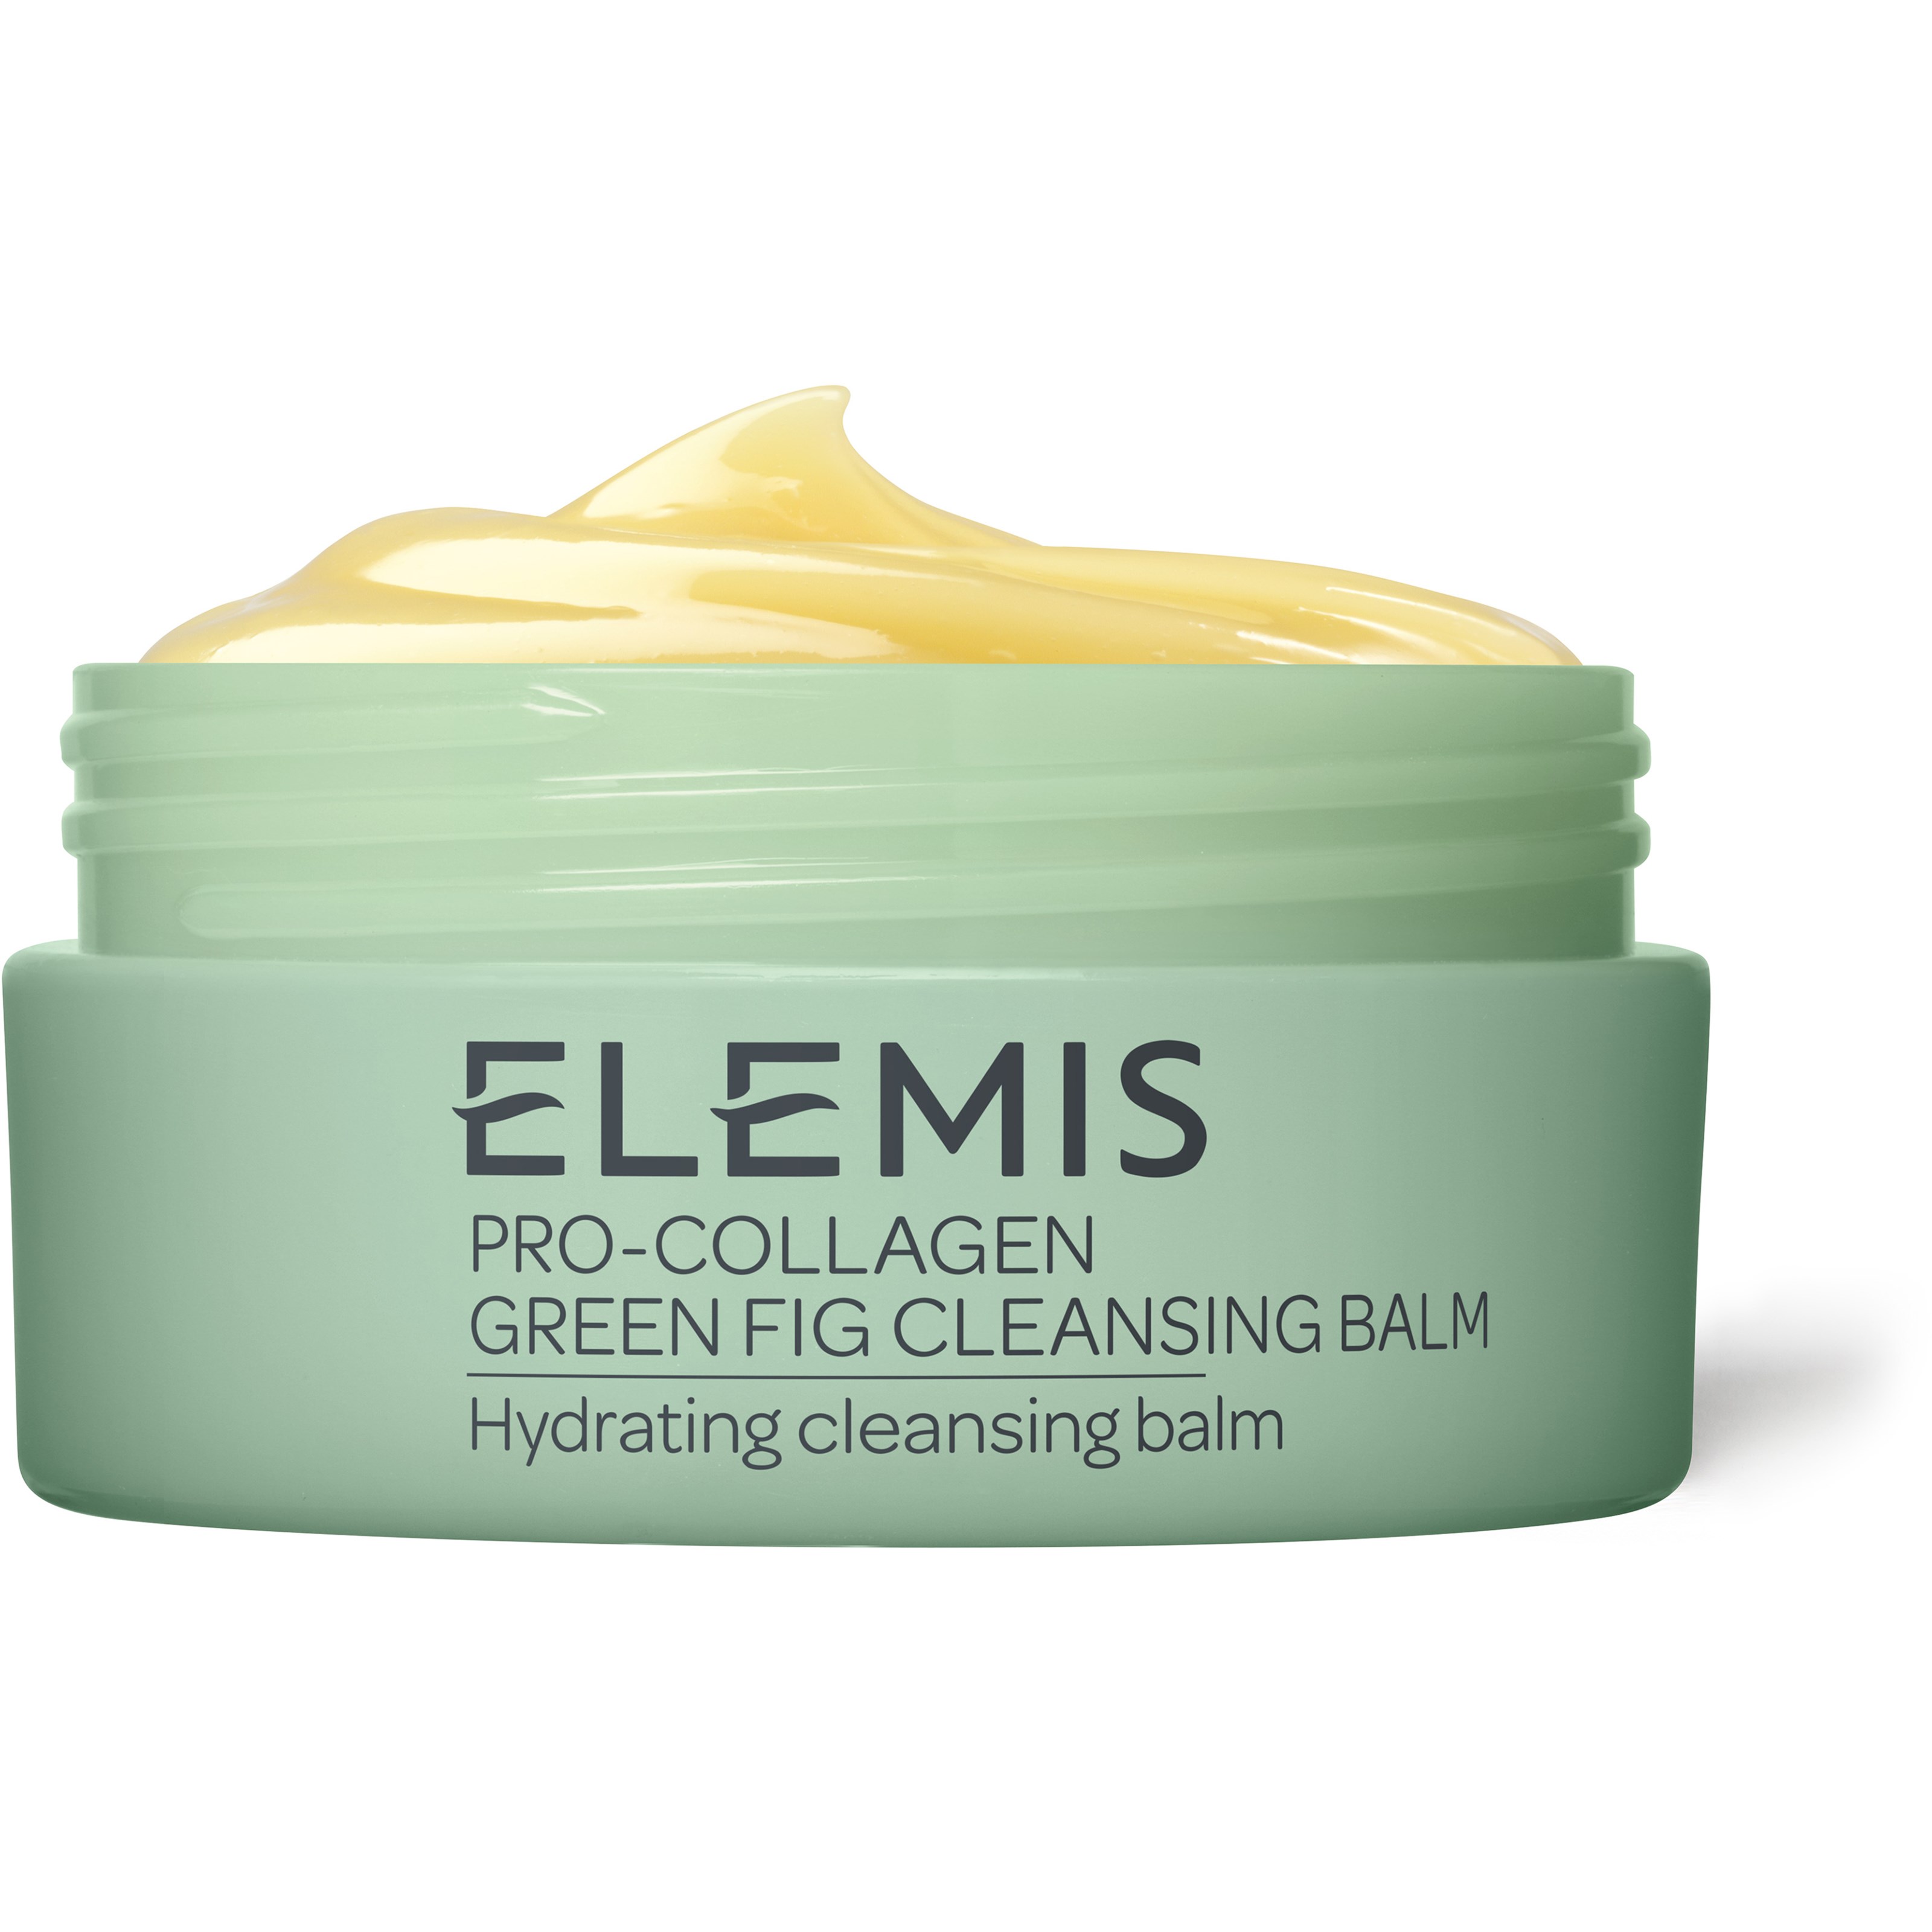 Bilde av Elemis Pro-collagen Green Fig Cleansing Balm 100 G